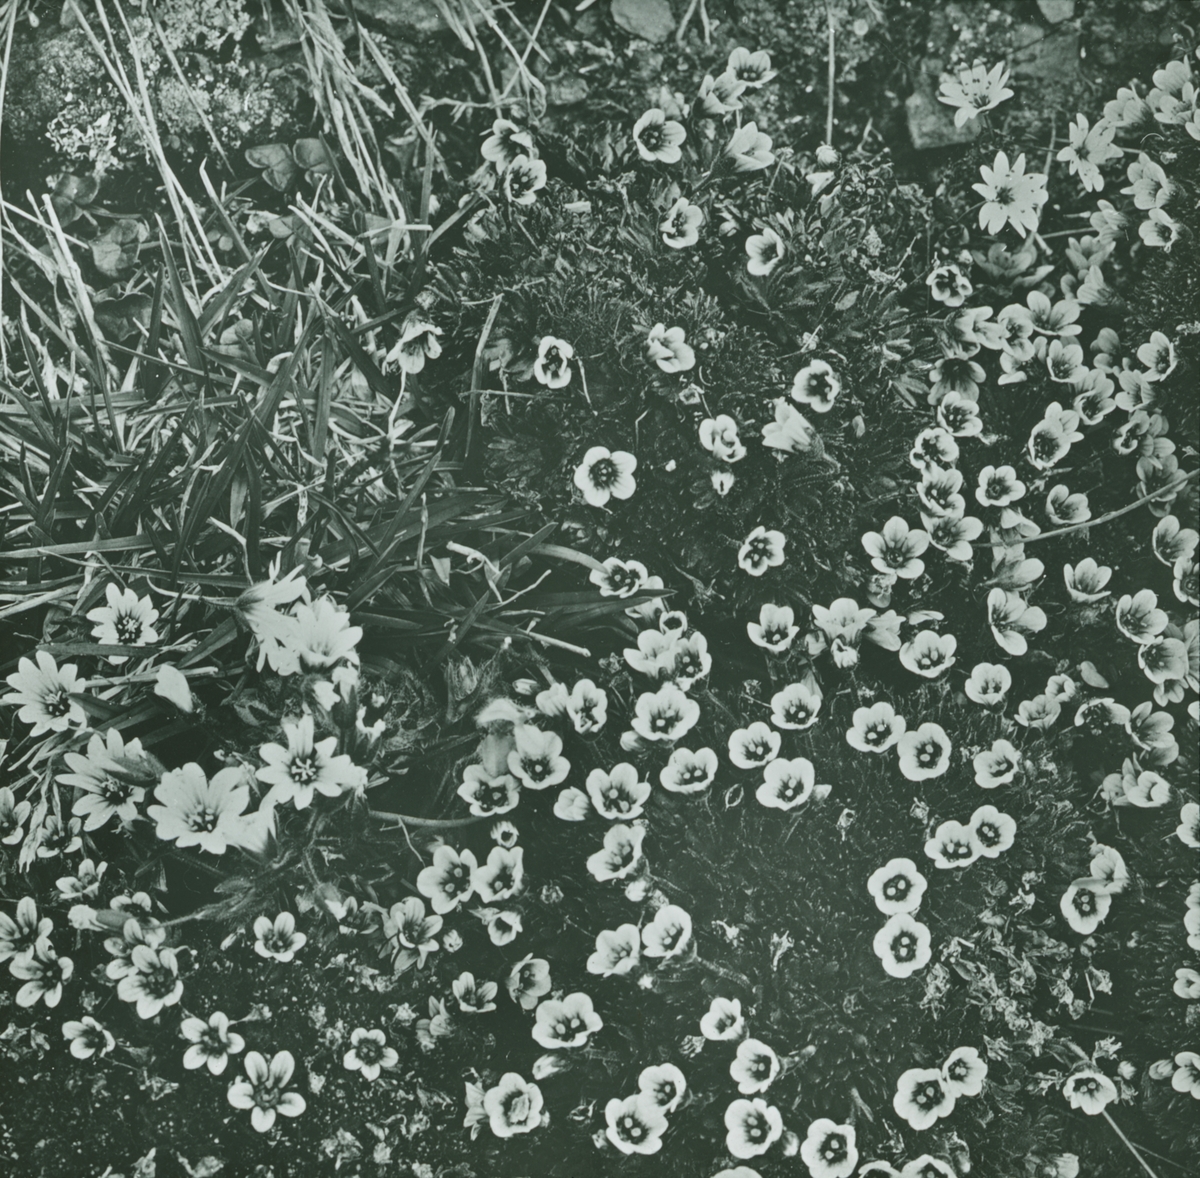 Fotografi från expedition till Spetsbergen. Motiv av blommor.